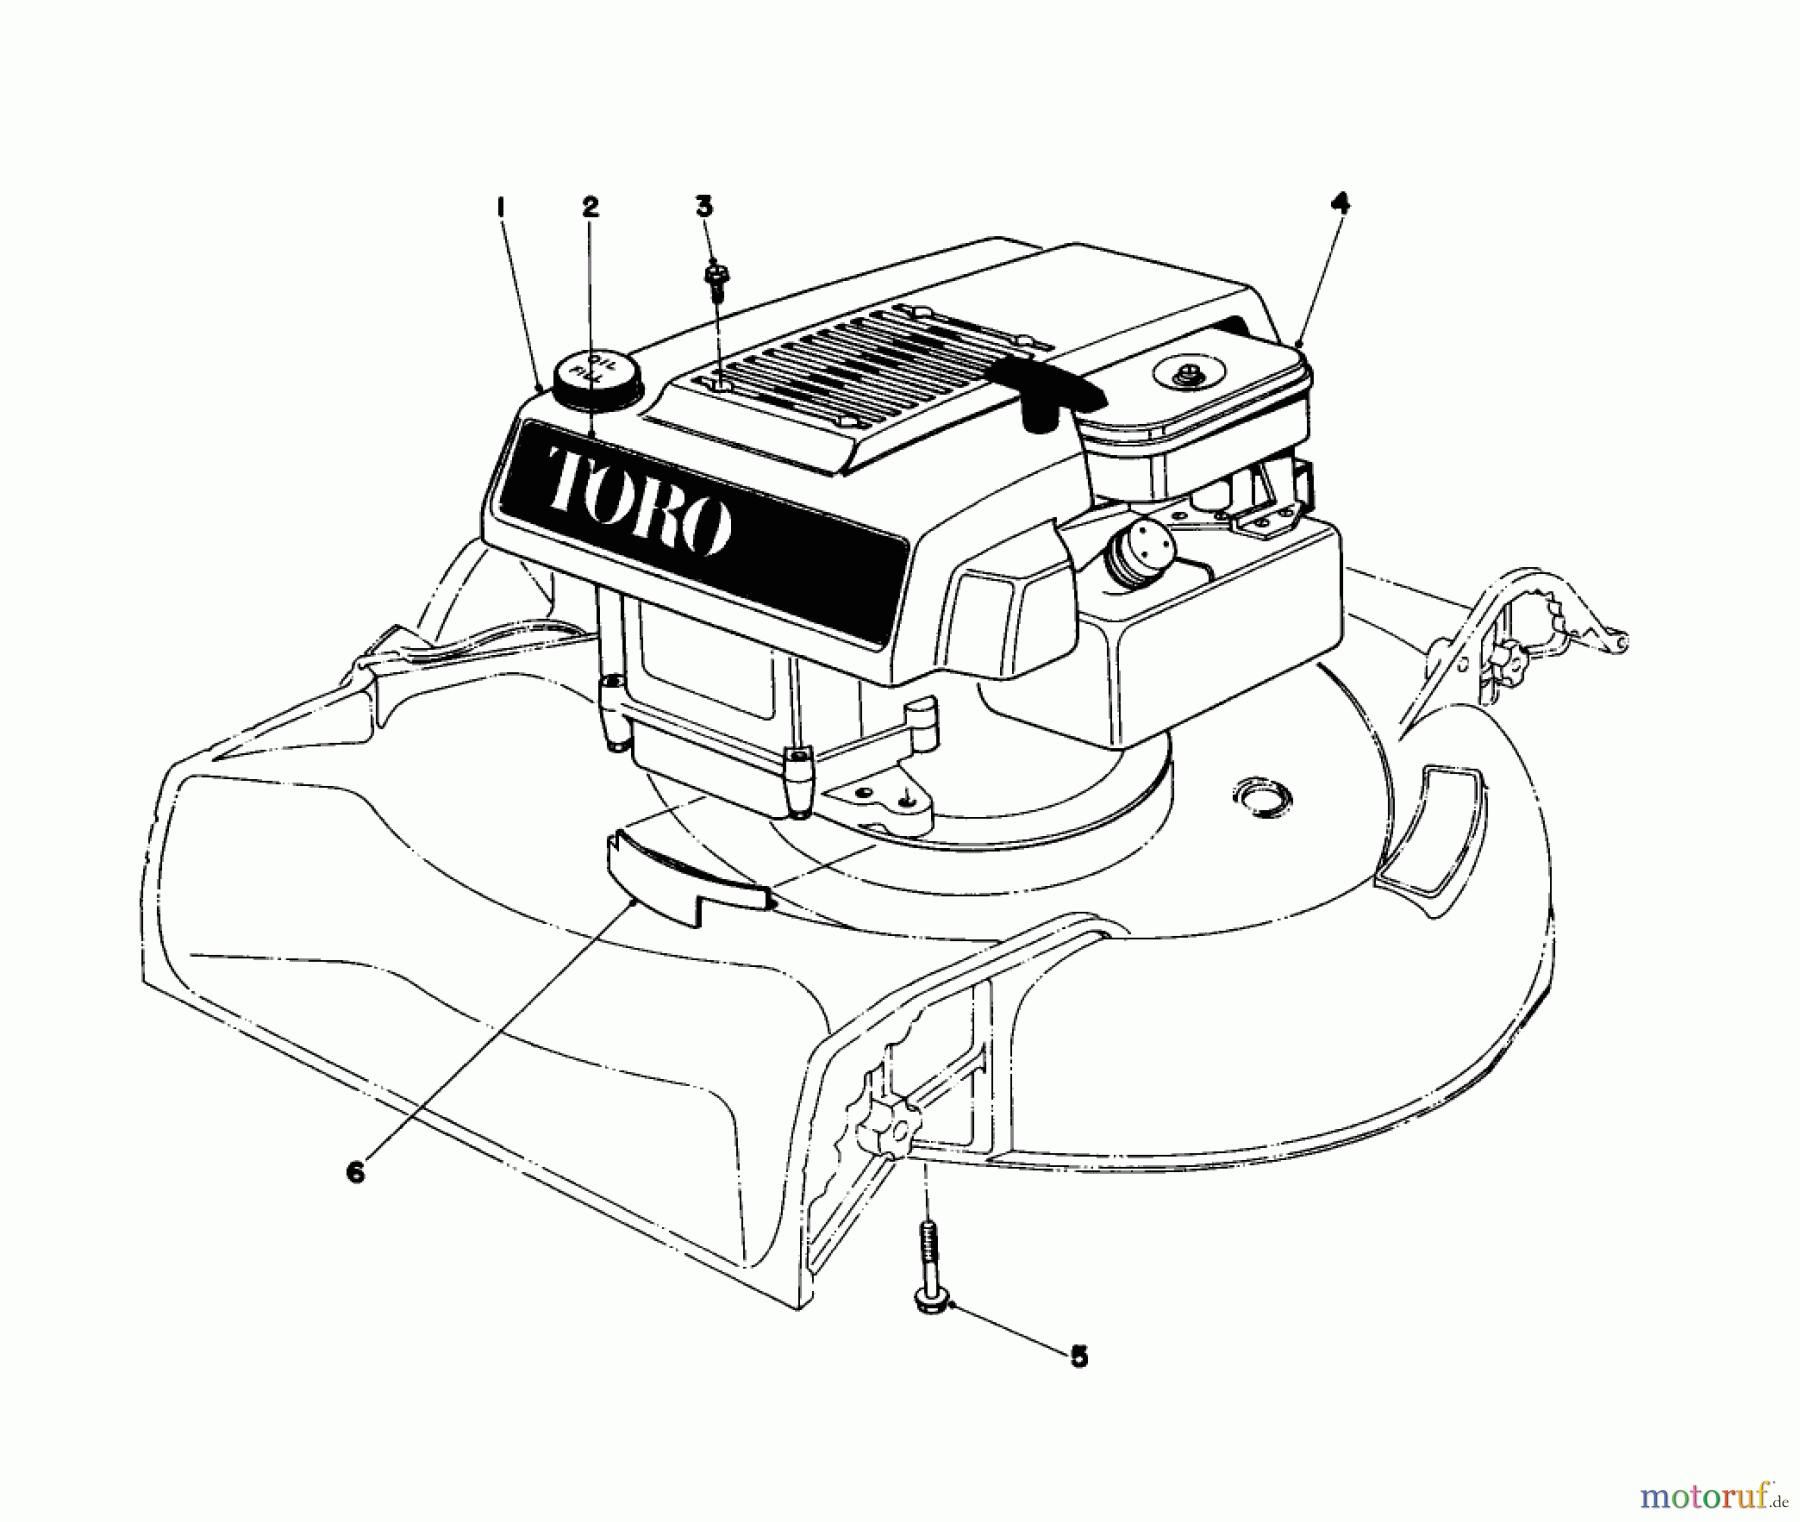  Toro Neu Mowers, Walk-Behind Seite 1 16310 - Toro Lawnmower, 1979 (9000001-9999999) ENGINE ASSEMBLY MODEL 16300 AND 16310